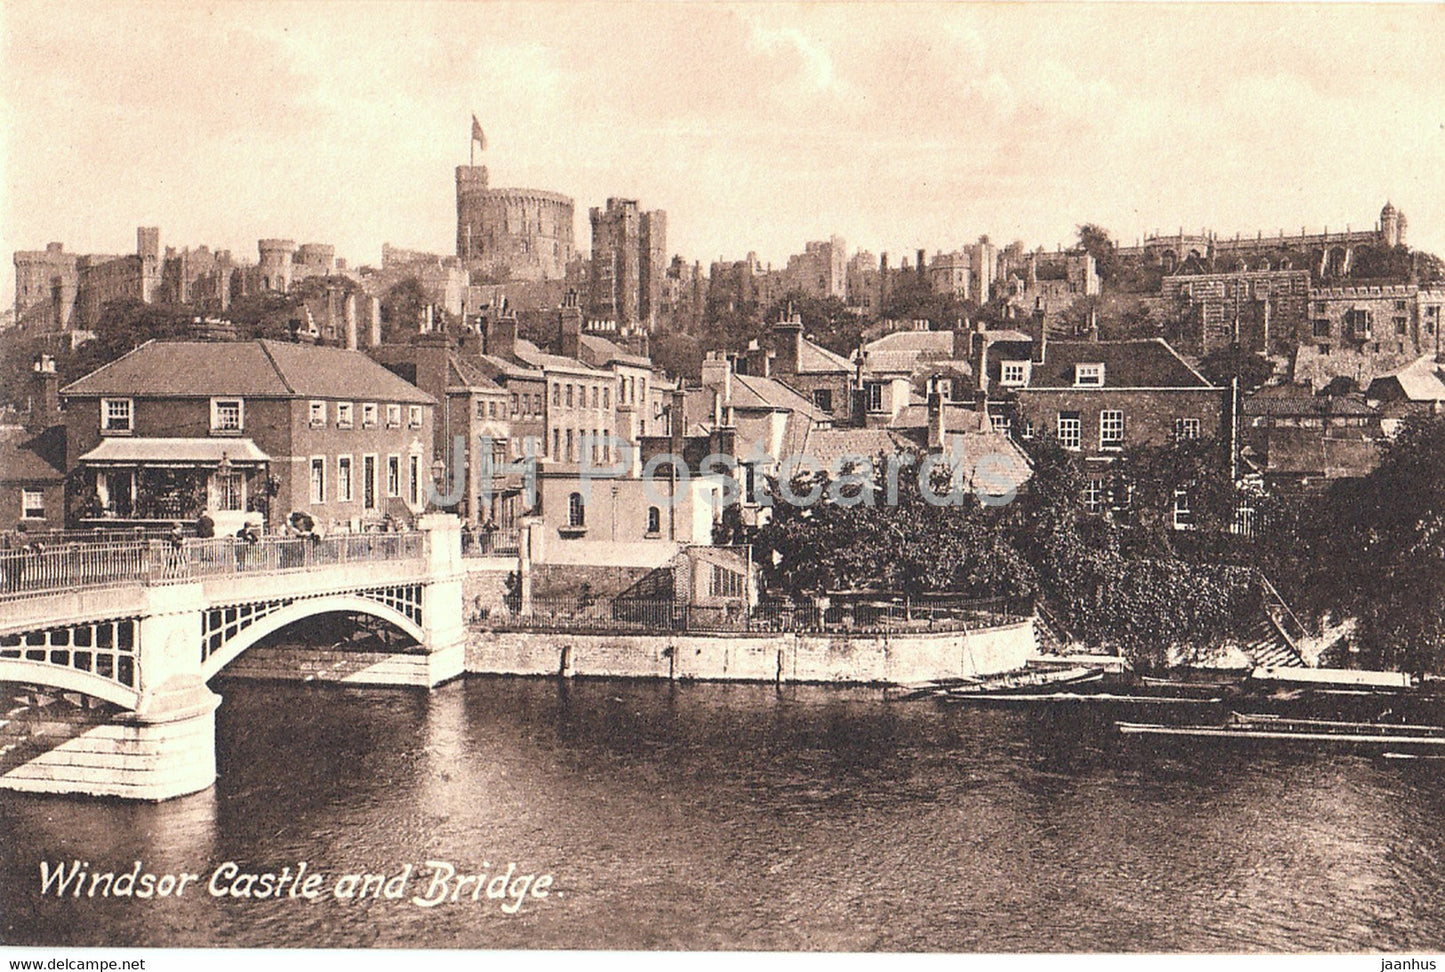 Windsor Castle and Bridge - 35370 - old postcard - England - United Kingdom - unused - JH Postcards